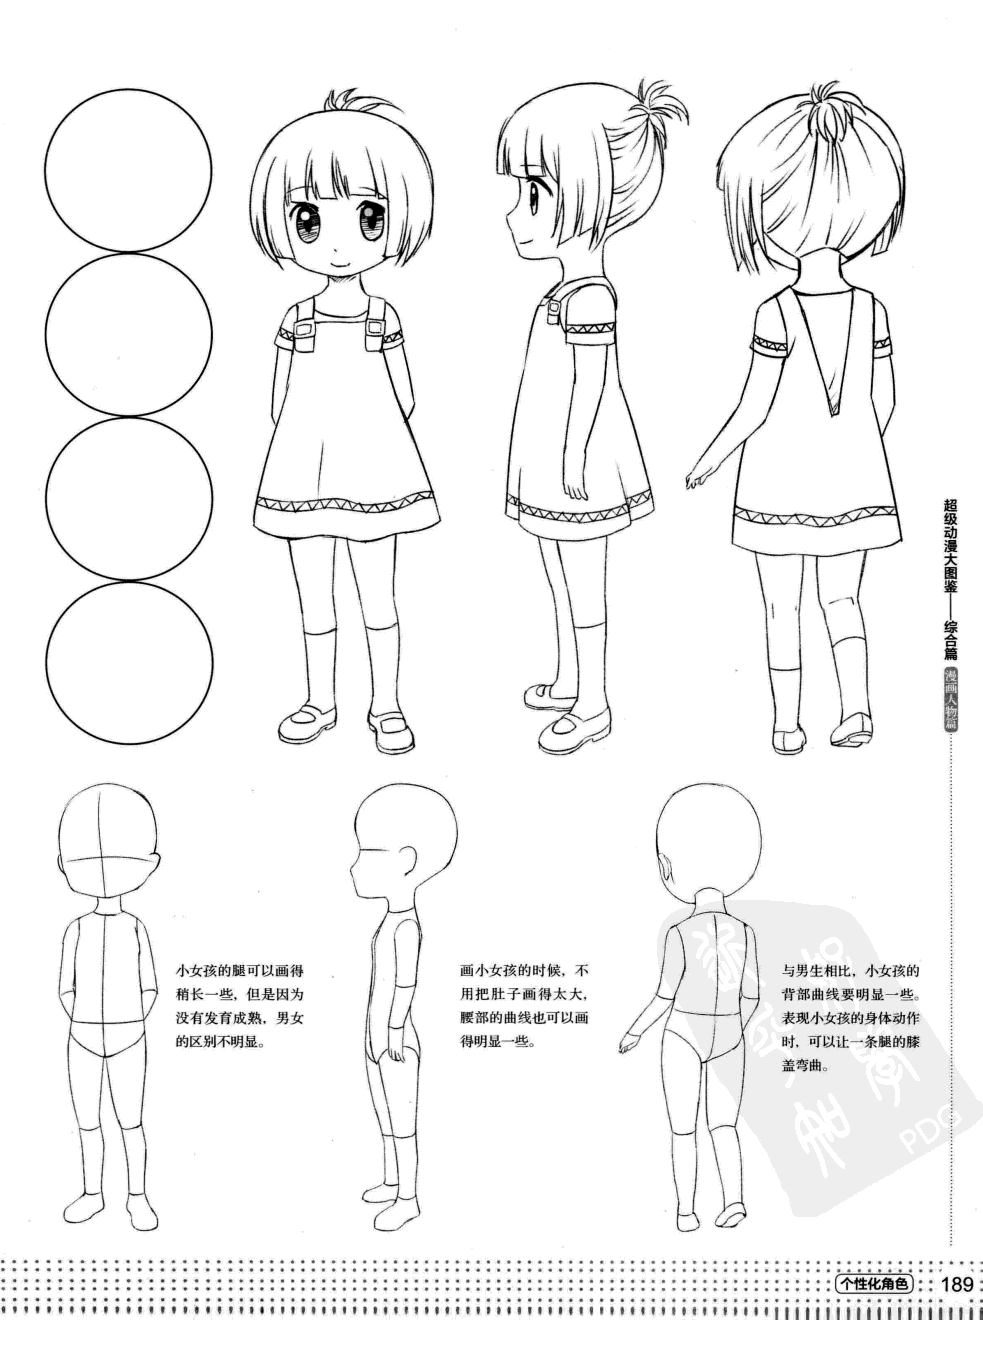 Как рисовать детей аниме